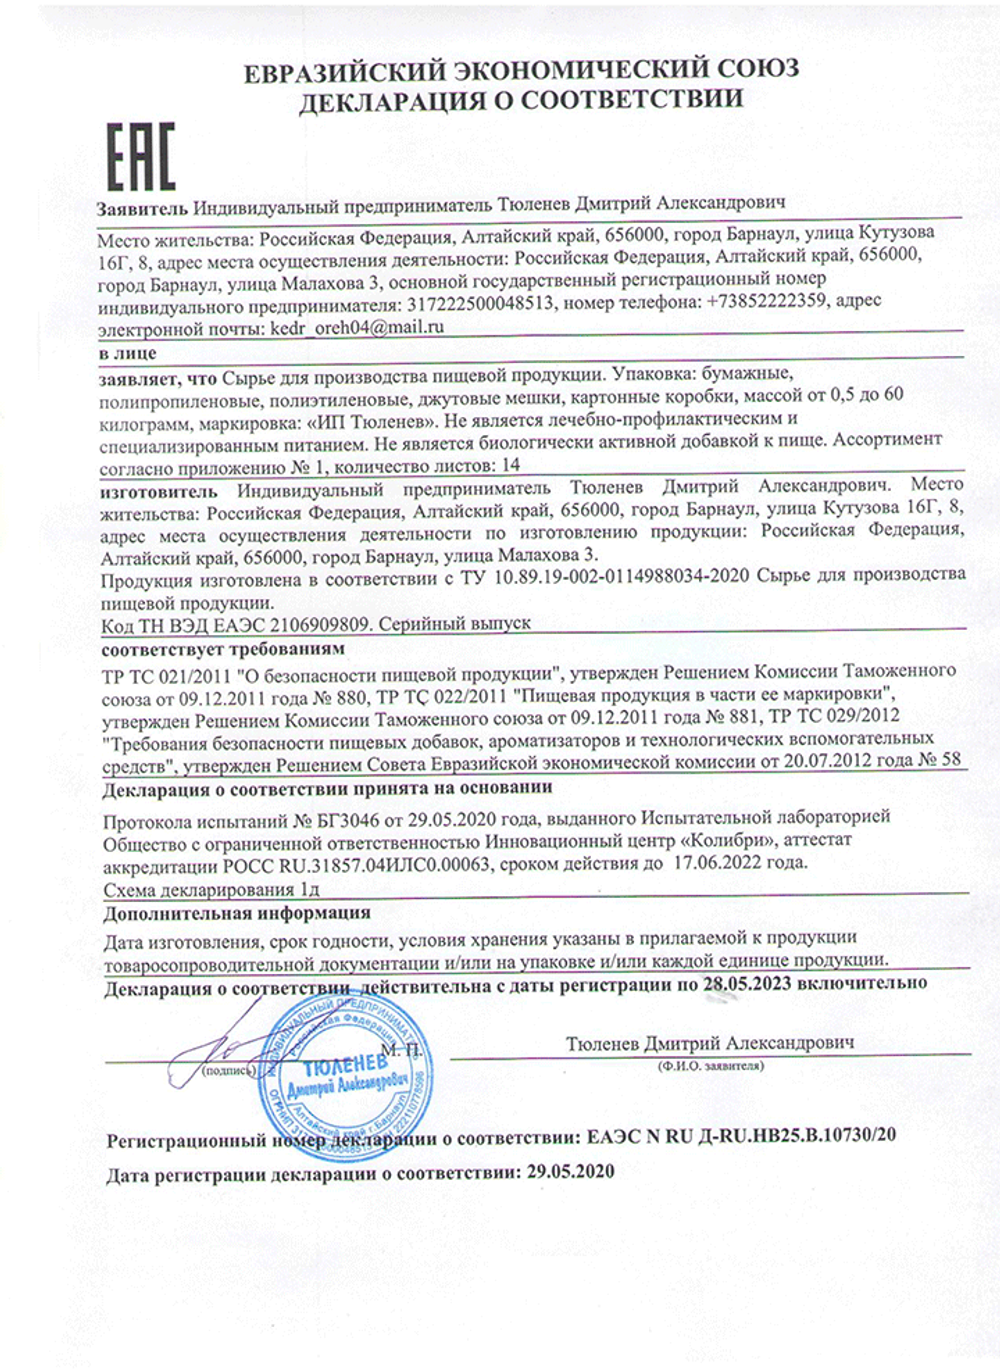 Изображение сертификата соответствия на корень молочая Палласа-adonnis.ru